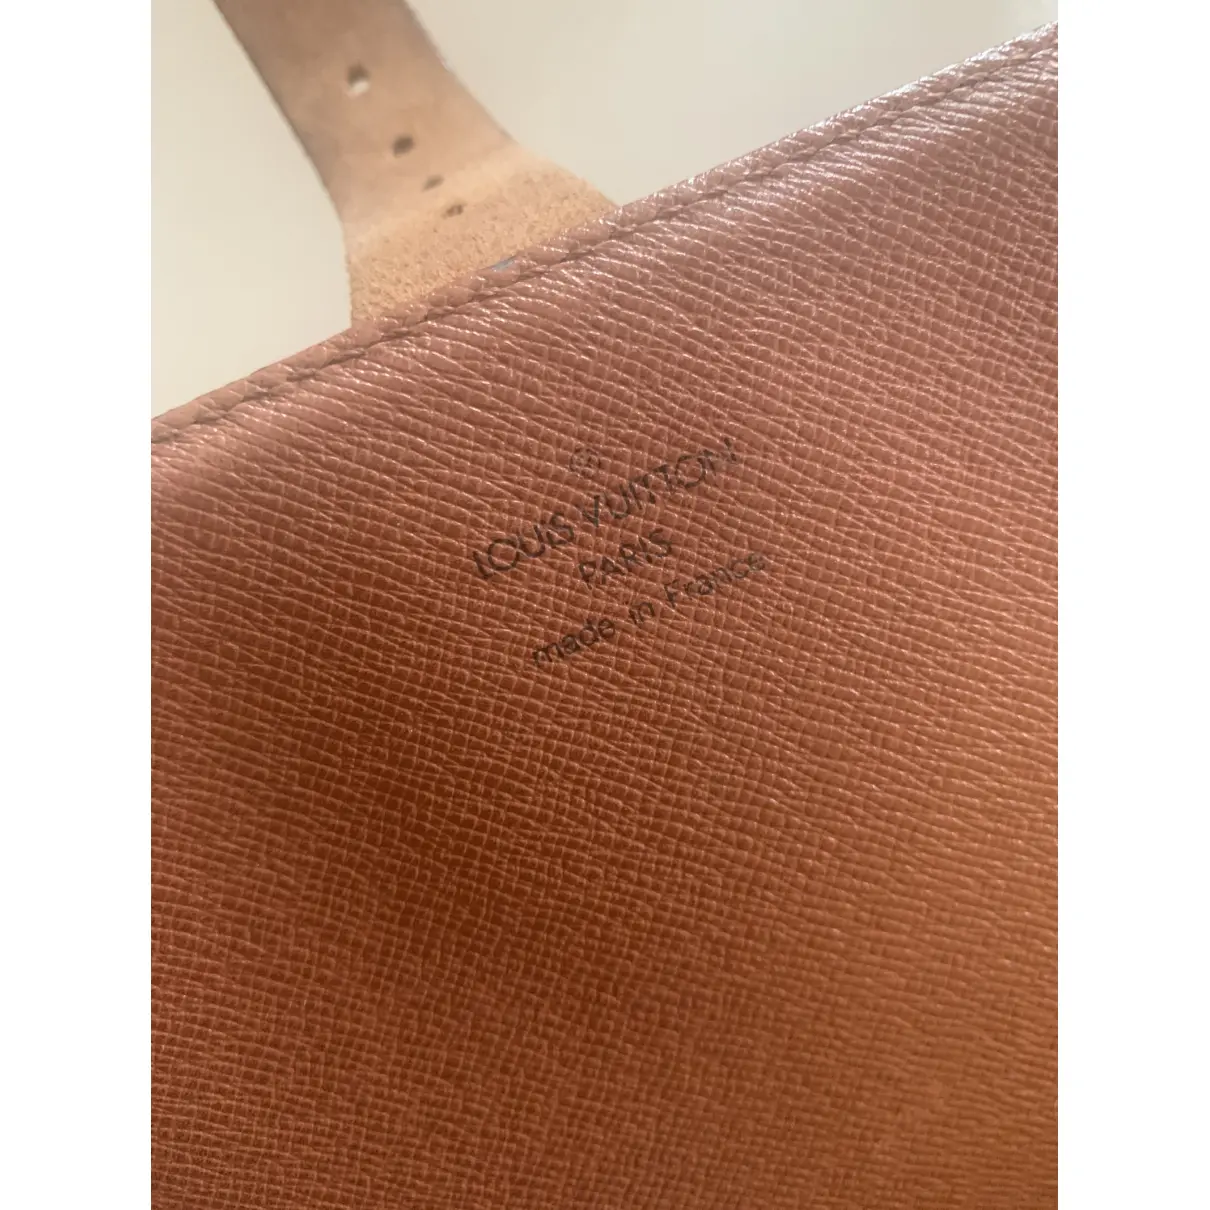 Cartouchière leather crossbody bag Louis Vuitton